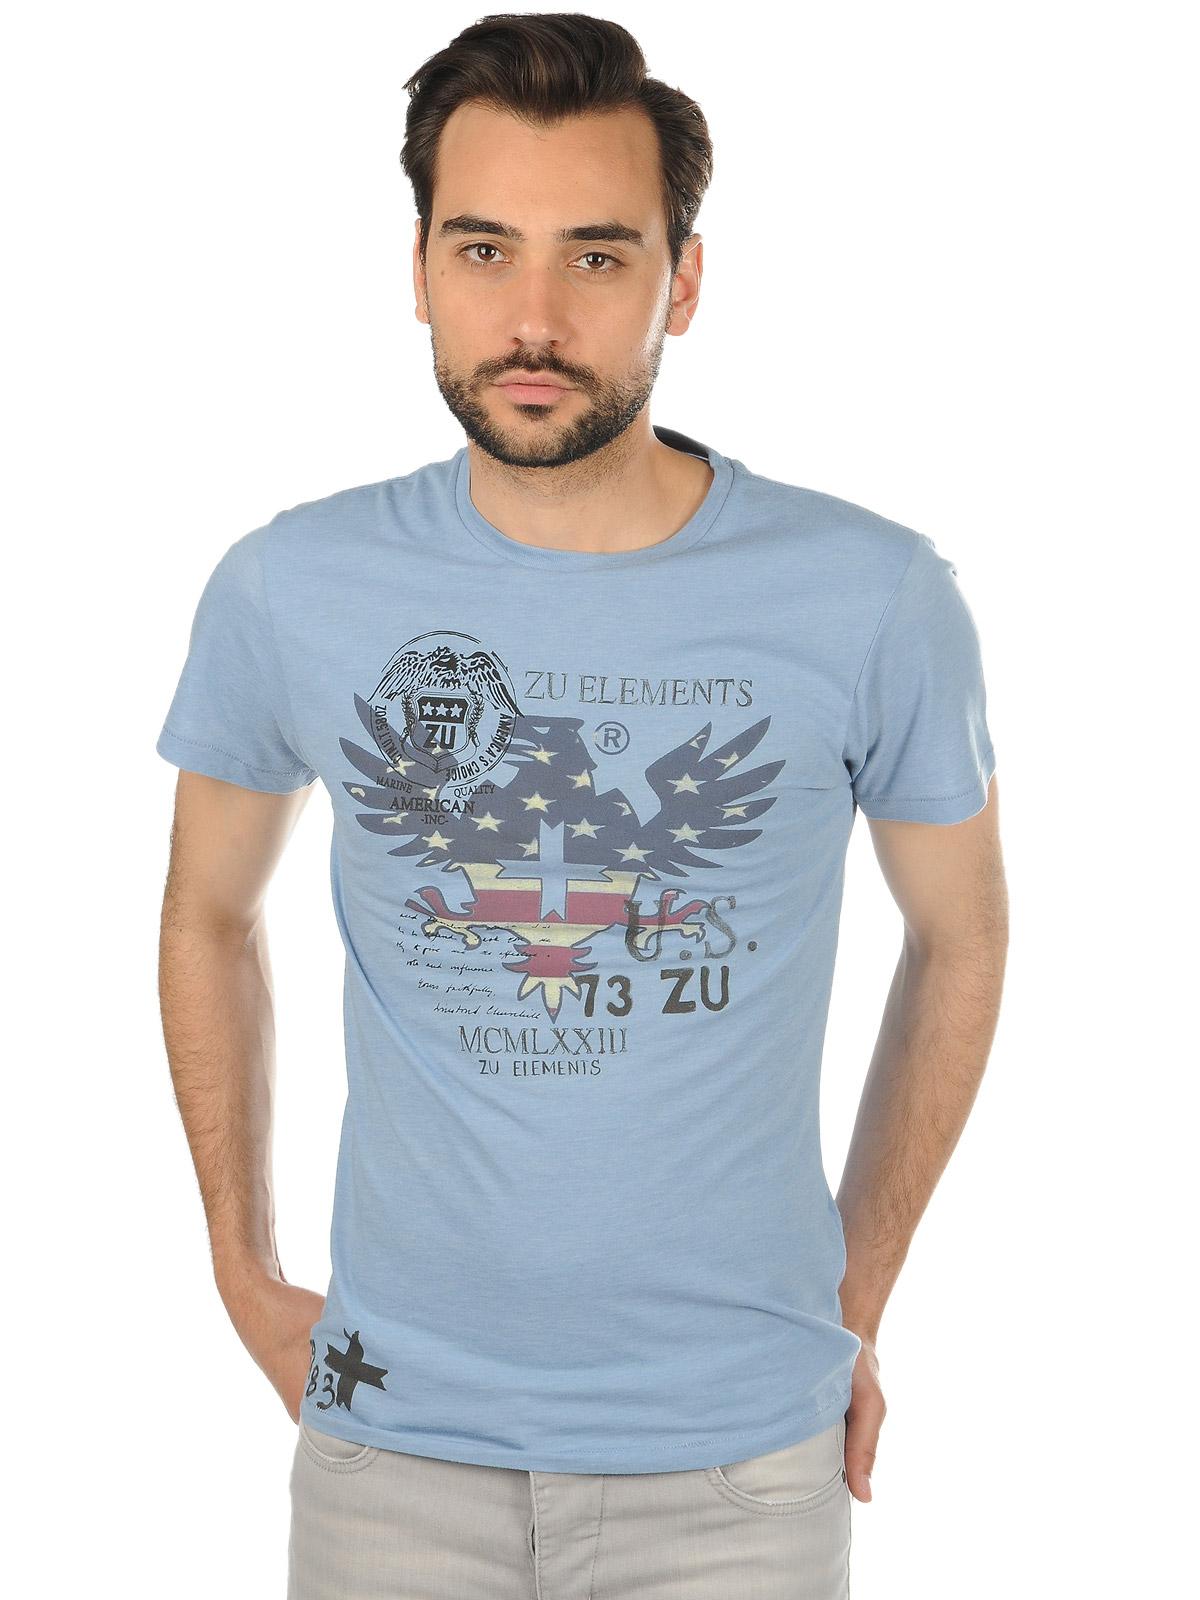 Foto Zu Elements Camiseta azul XL